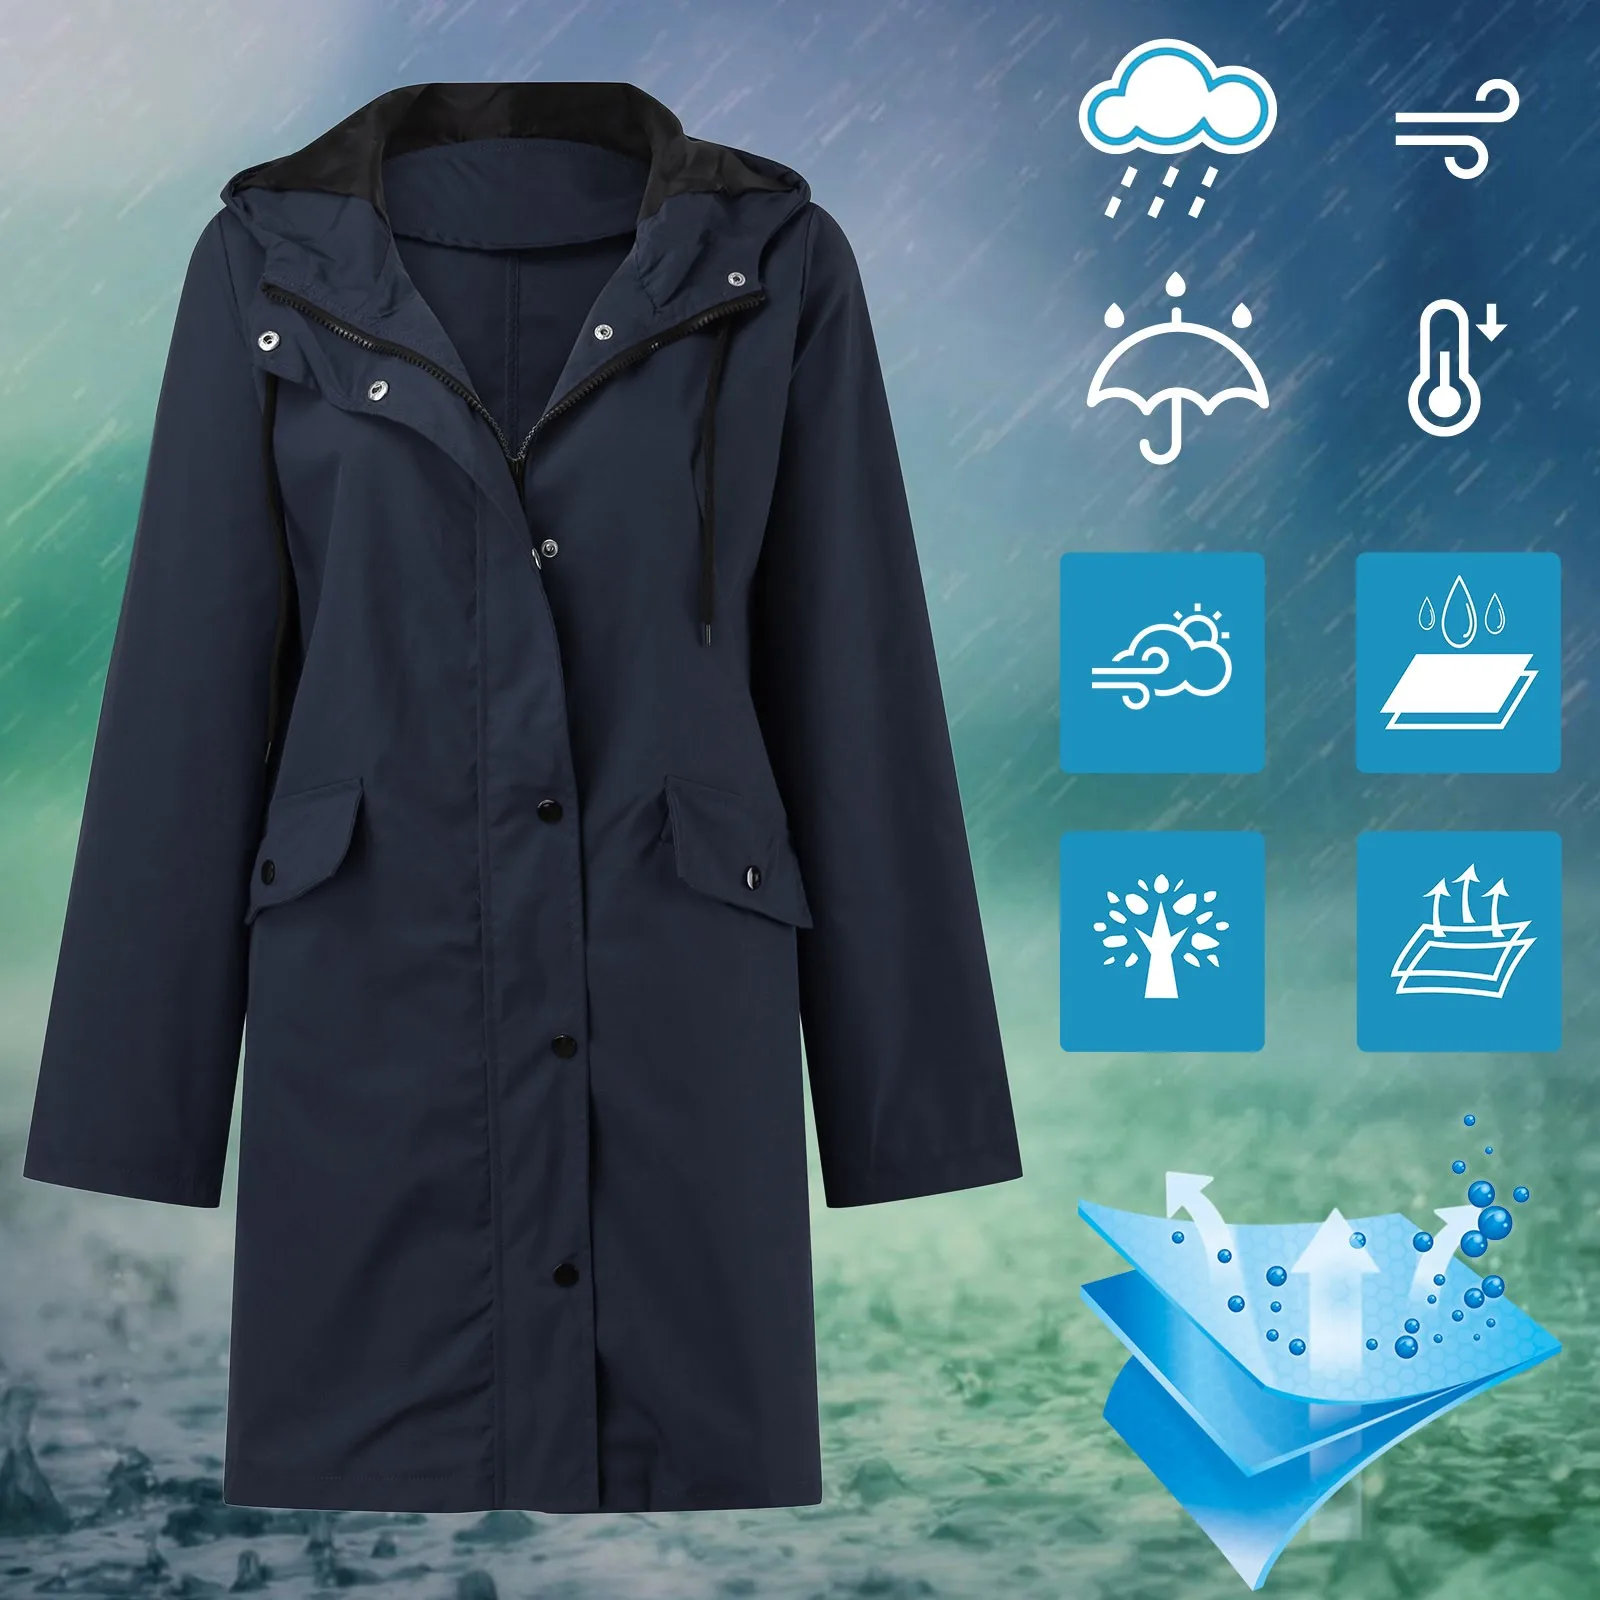 Waterproof Windproof Fashion Women Solid Trench Hoodie Rain Outdoor Windbreaker Long Sleeve Long Hooded Raincoat Plus Size